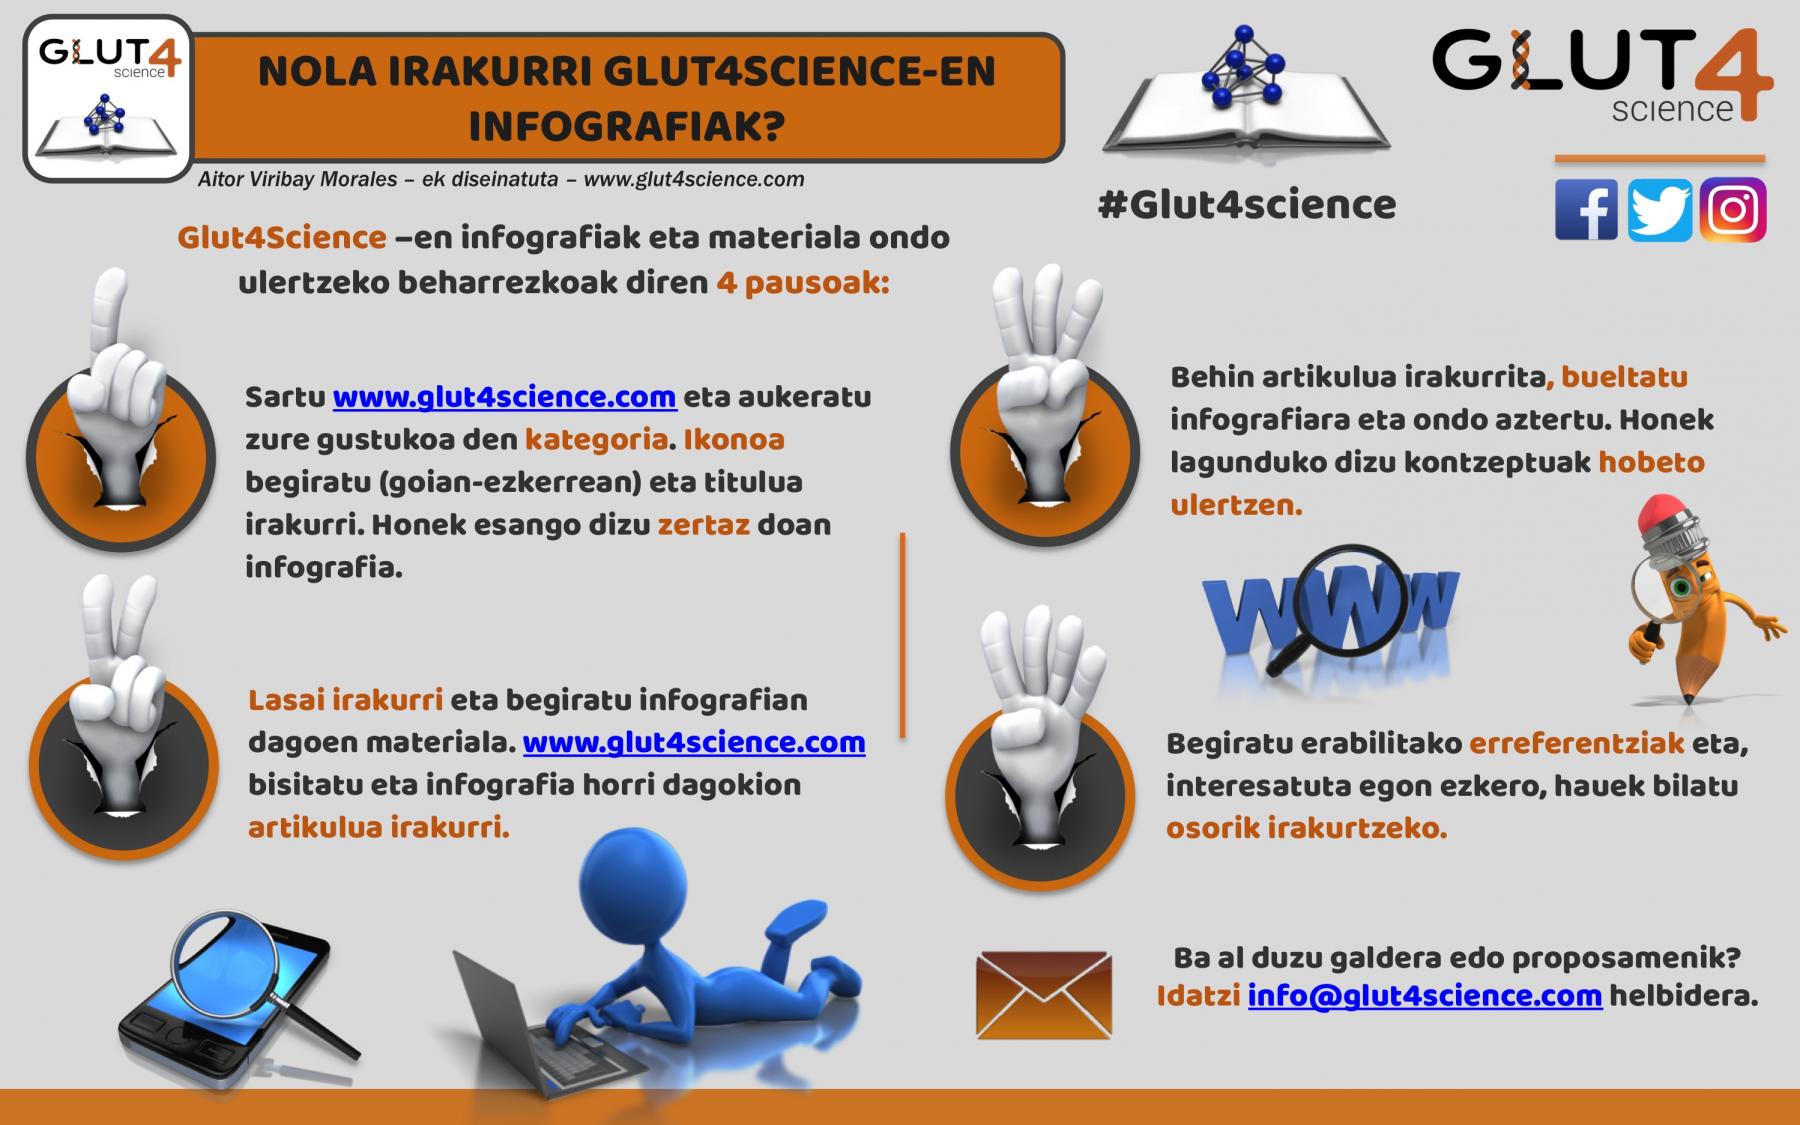 Nola irakurri Glut4Science-en infografiak